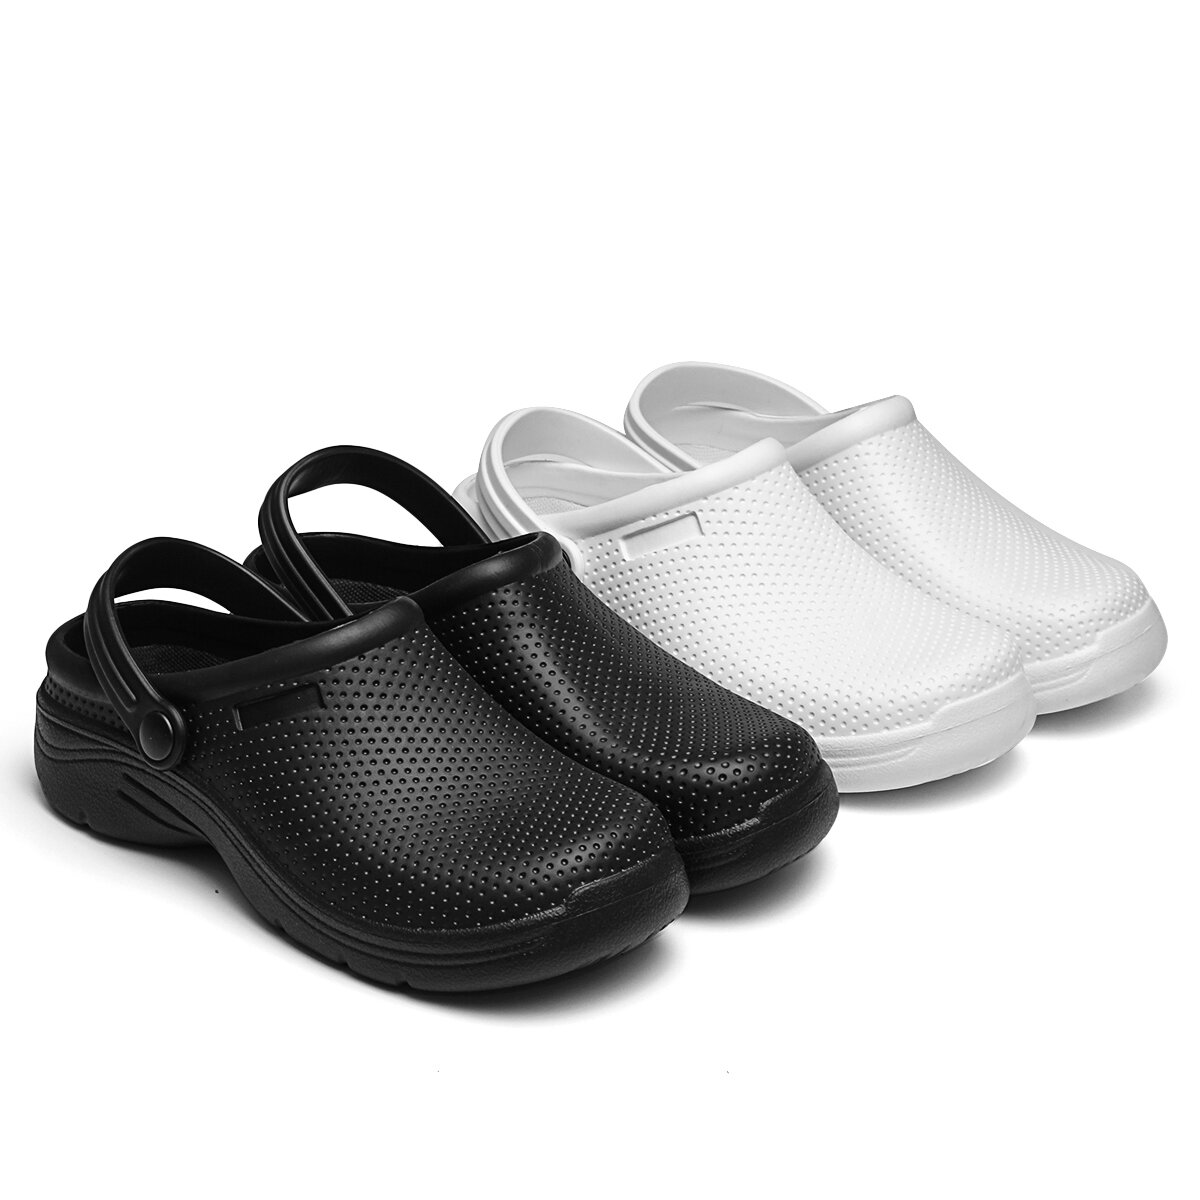 AtreGo EVA Yaz Sandaletleri Güvenlik Ayakkabıları Su Geçirmez Kaymaz Açık Hava İç Mekan Plaj Ayakkabıları Kadınlar ve Erkekler için.